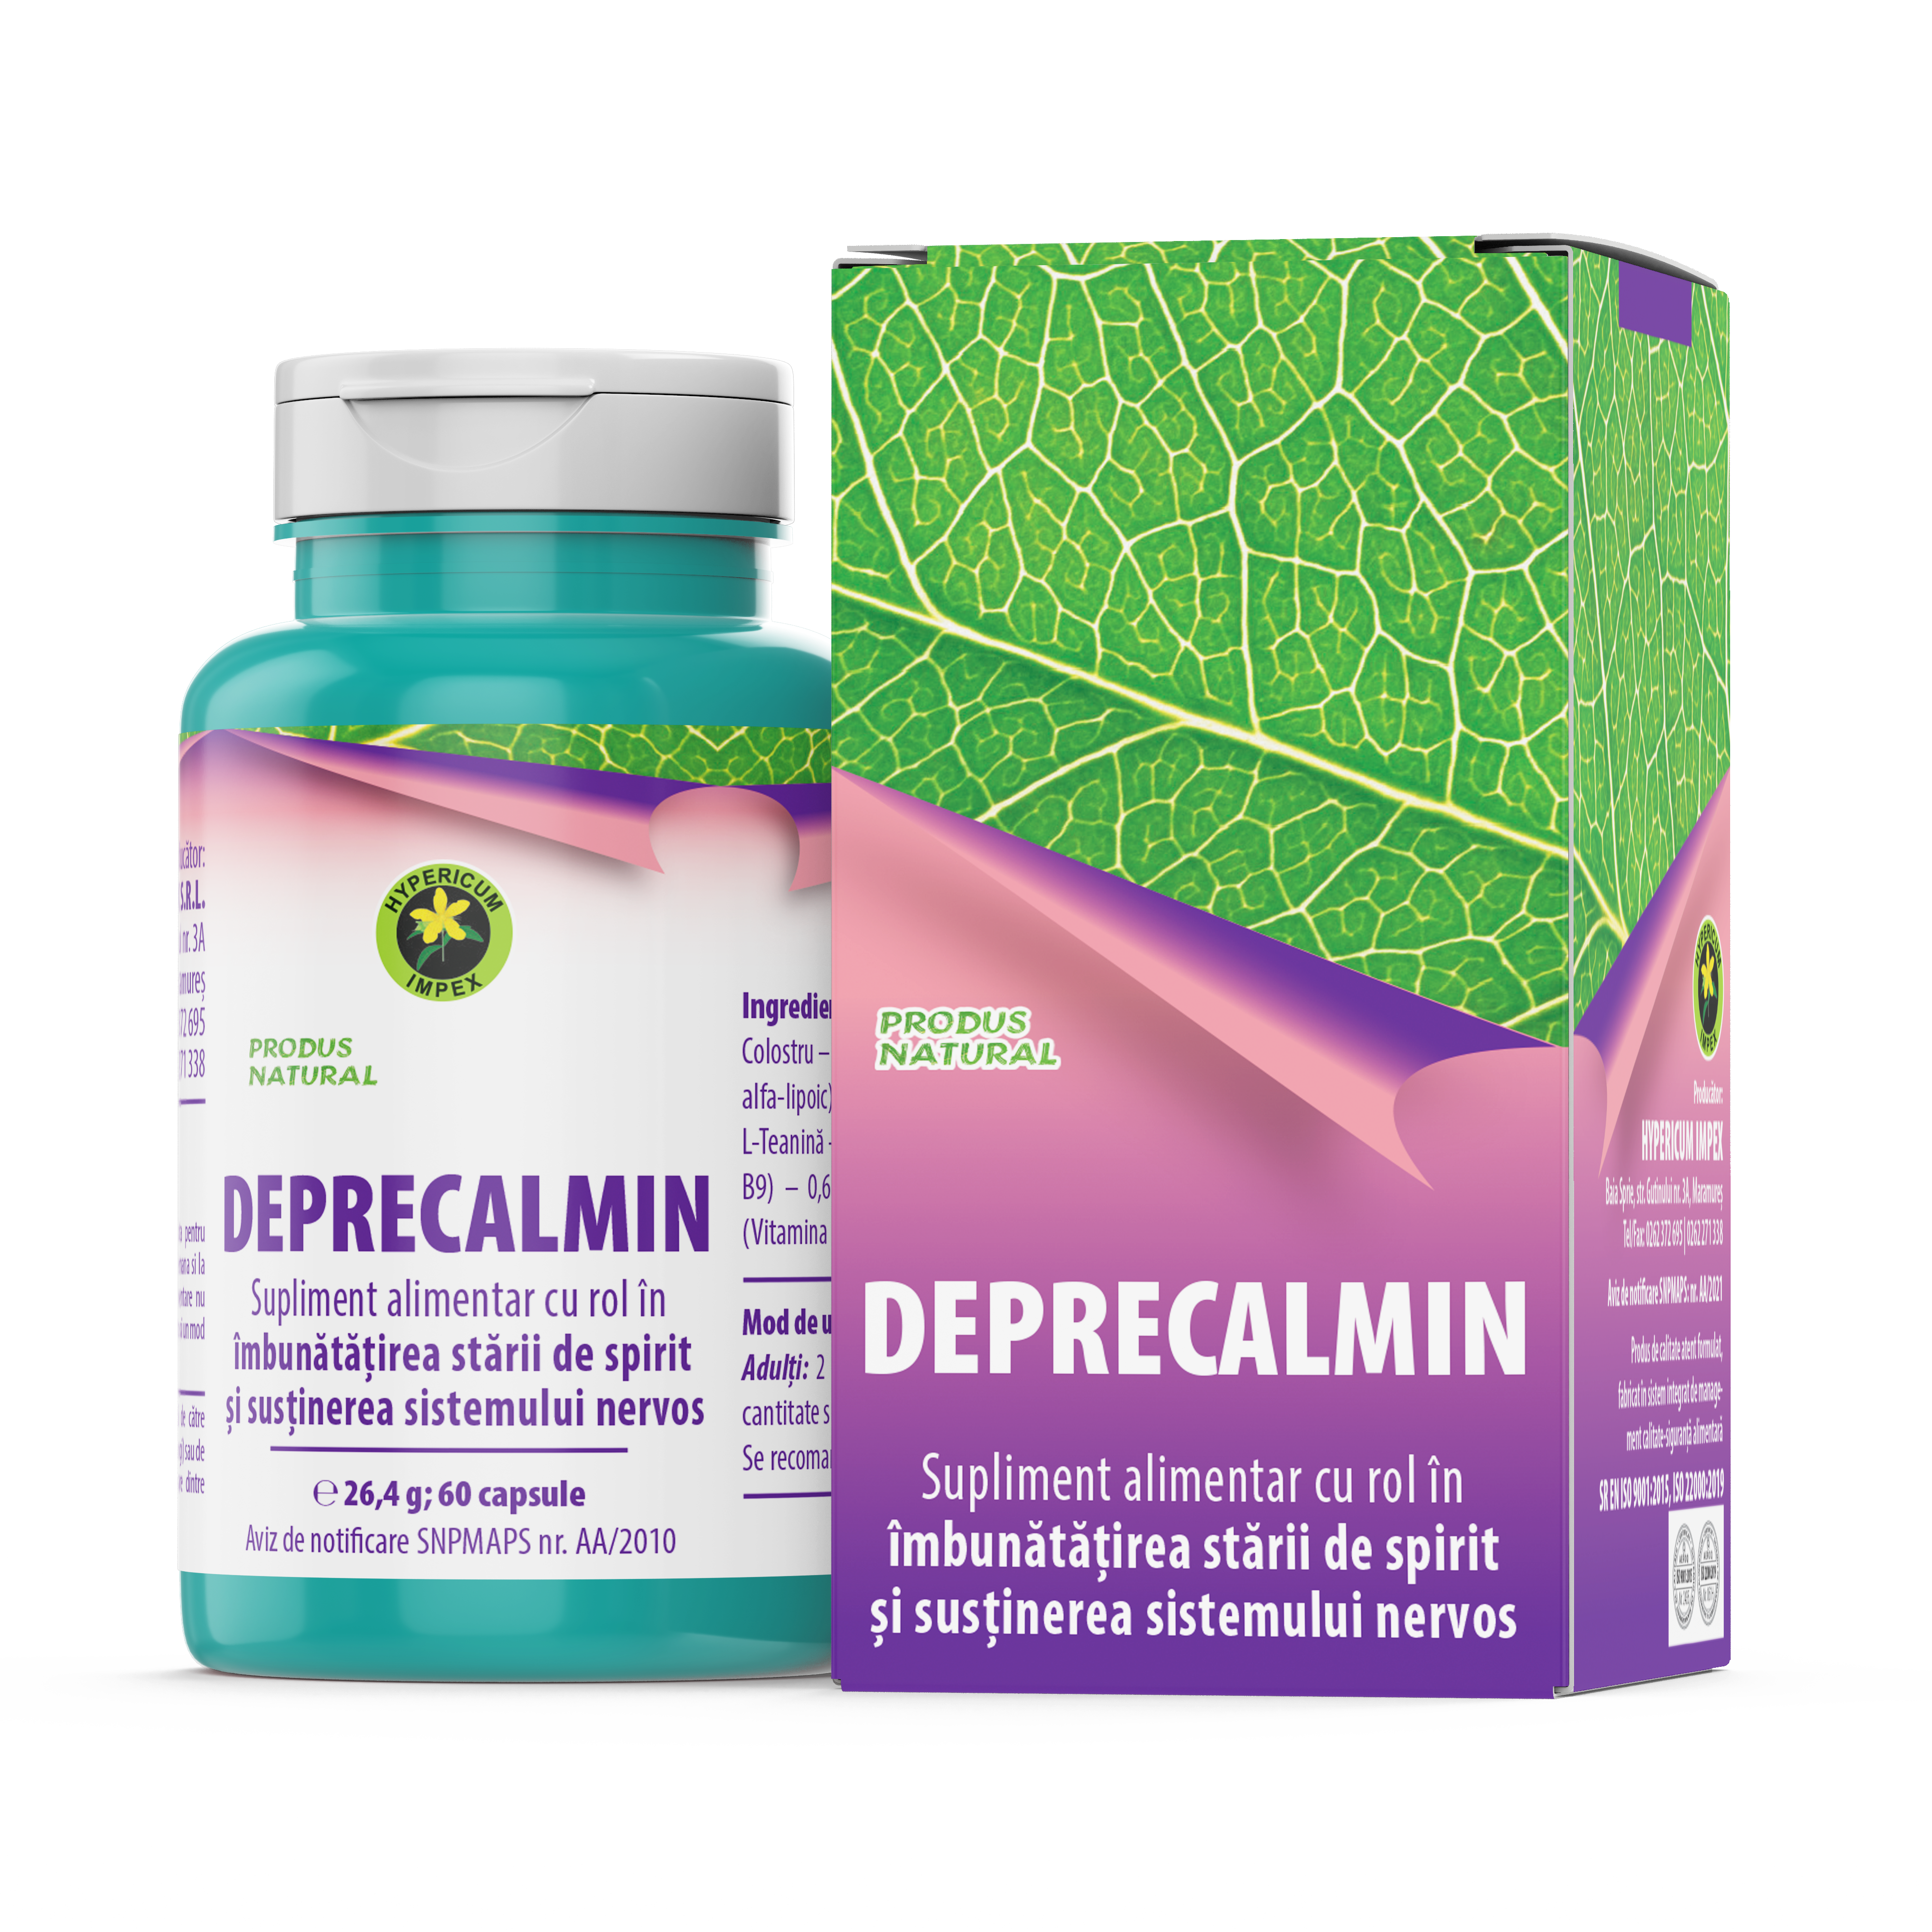 Capsule Deprecalmin - supliment alimentar atent formulat pentru a menține sănătatea sistemului nervos și a induce o stare generală de bine.